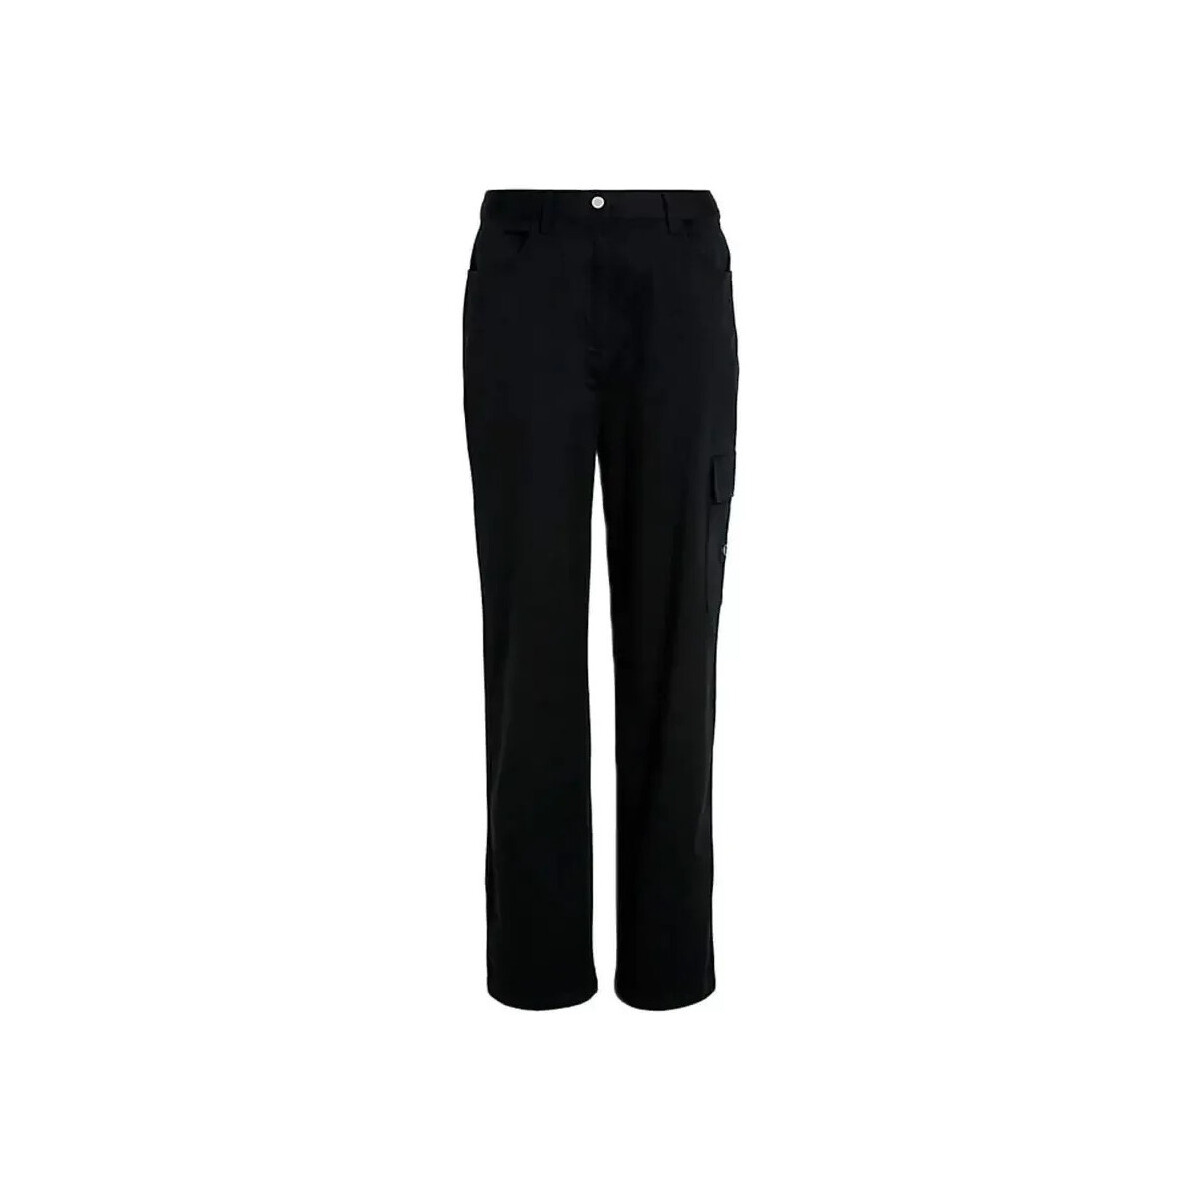 Vêtements Femme Pantalons Calvin Klein Jeans Cargo Noir